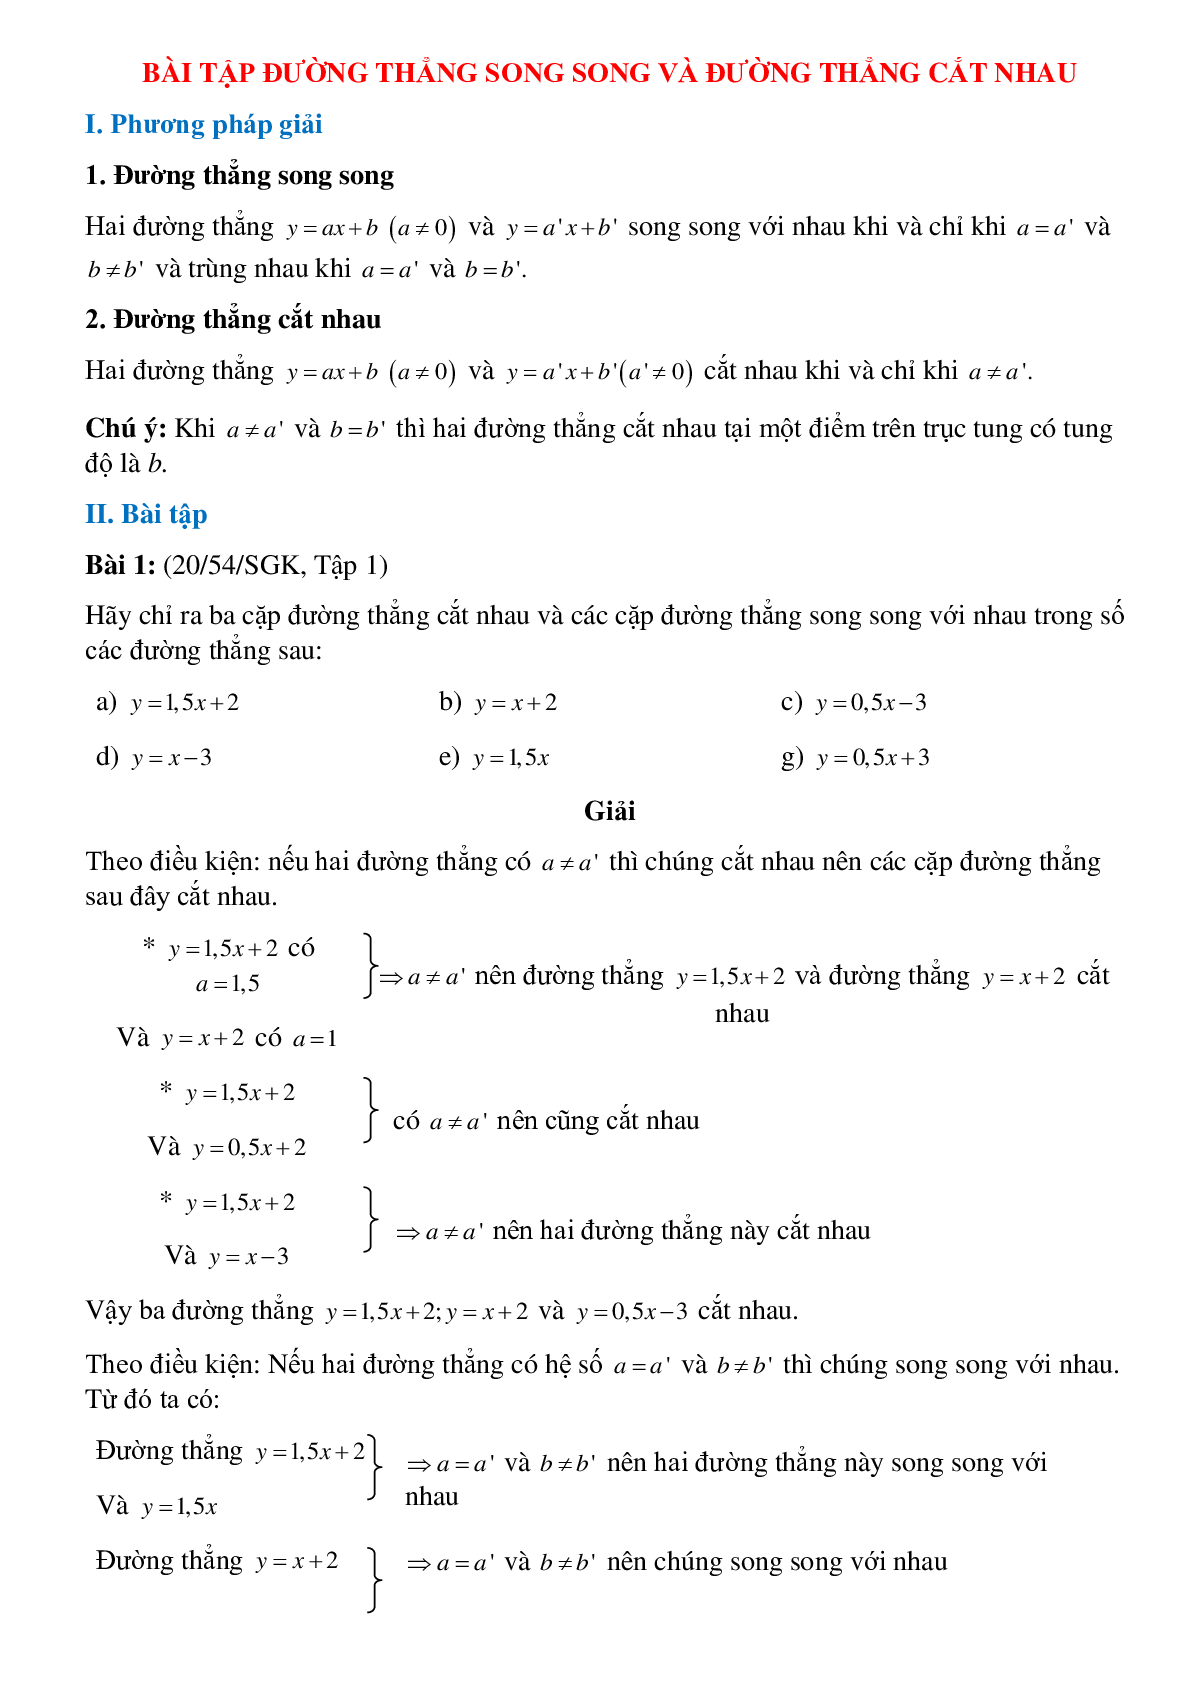 50 Bài tập Đường thẳng song song và đường thẳng cắt nhau (có đáp án)- Toán 9 (trang 1)